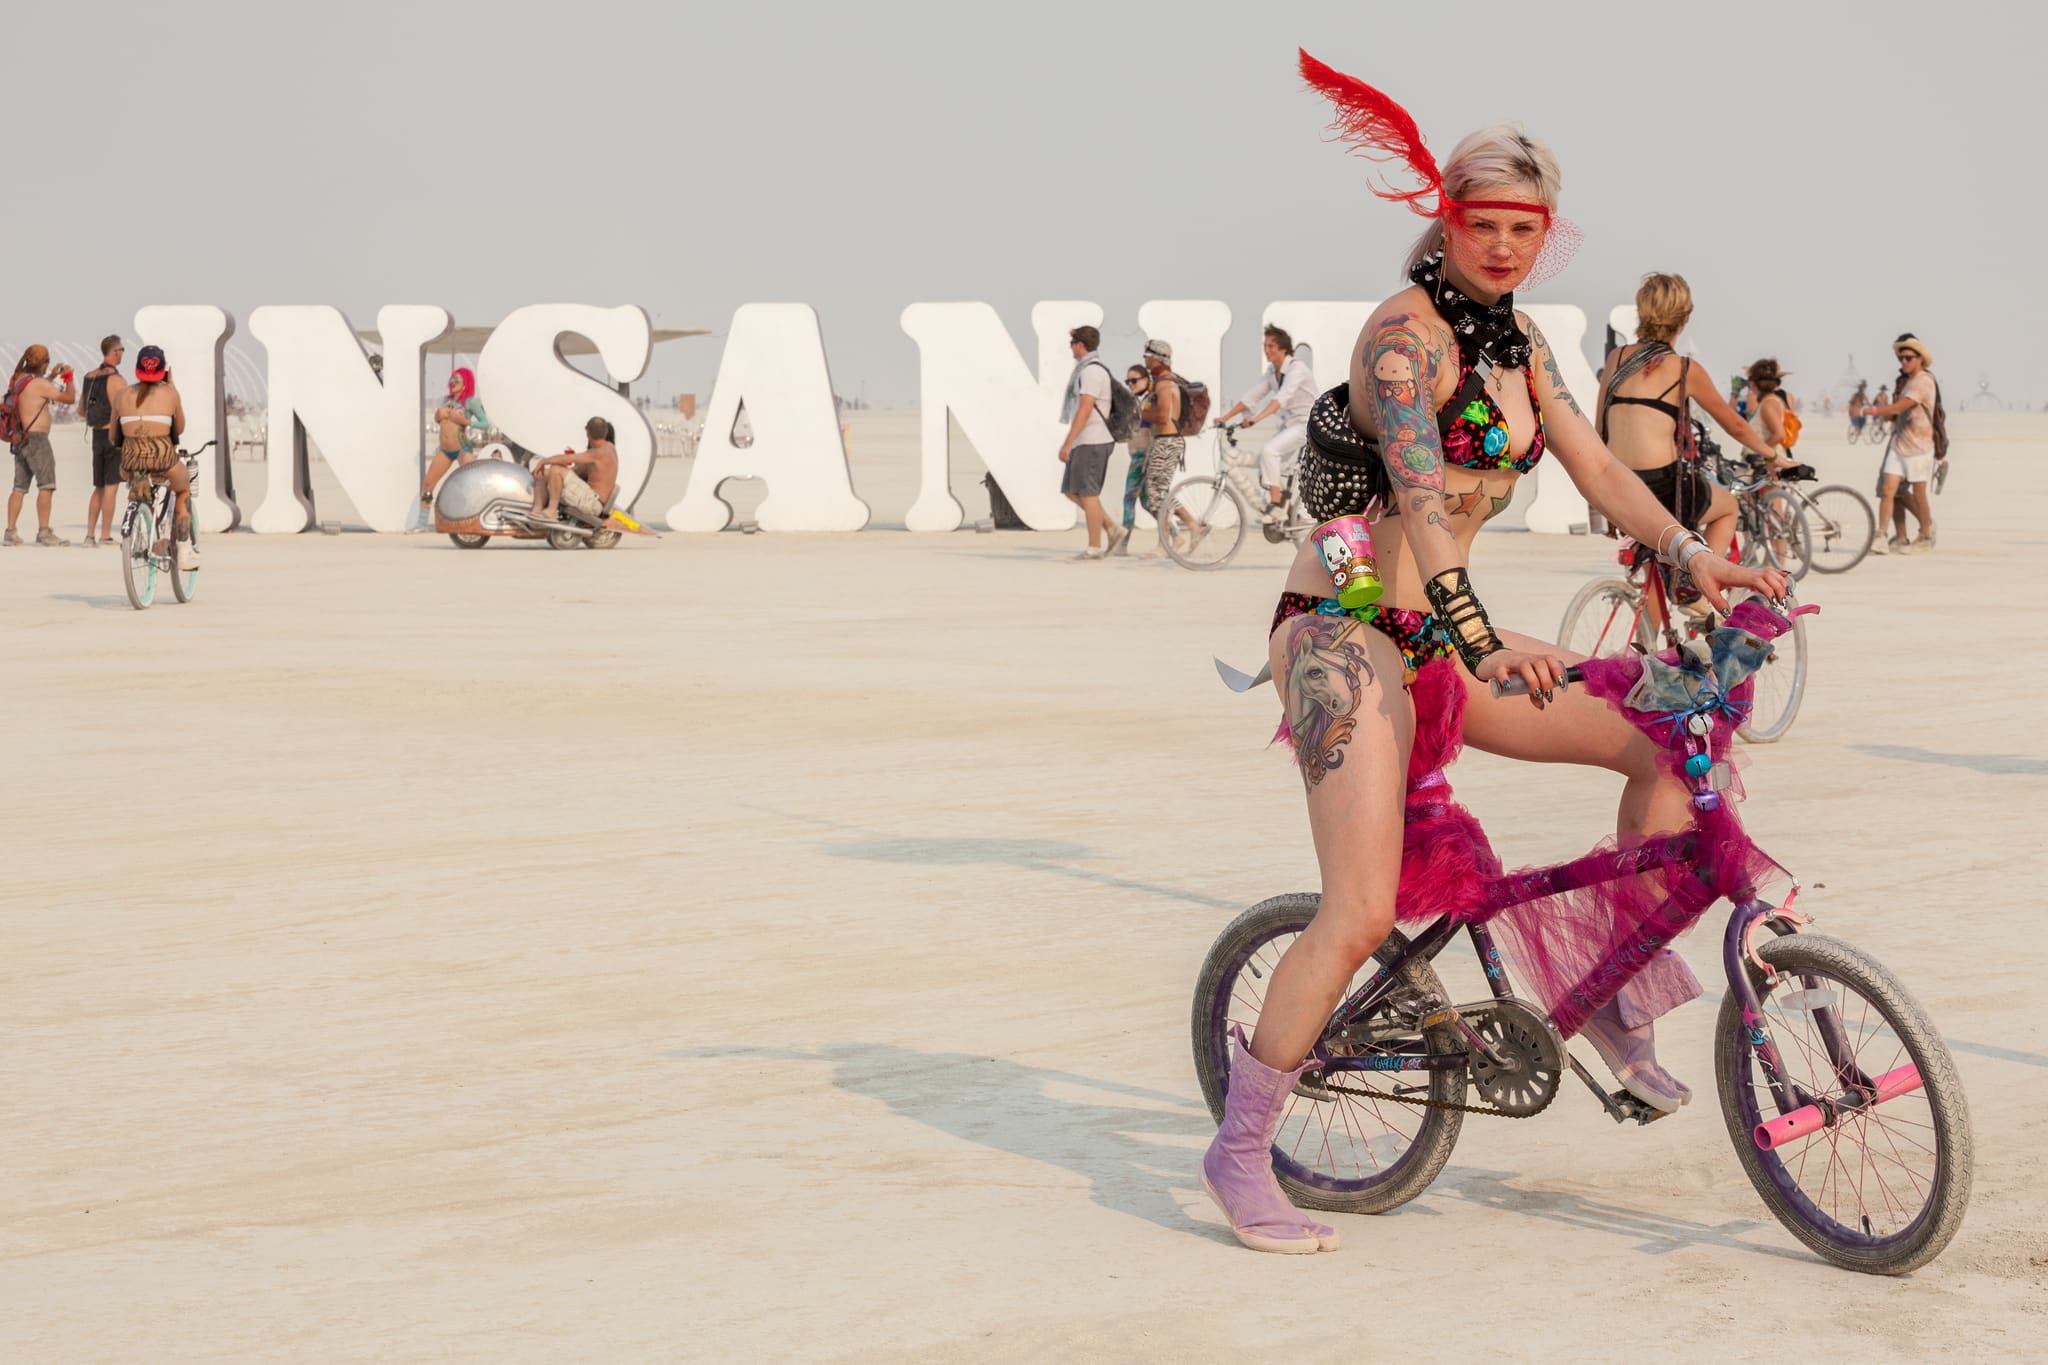 Афиша: Билеты: как попасть на Burning Man-2019?